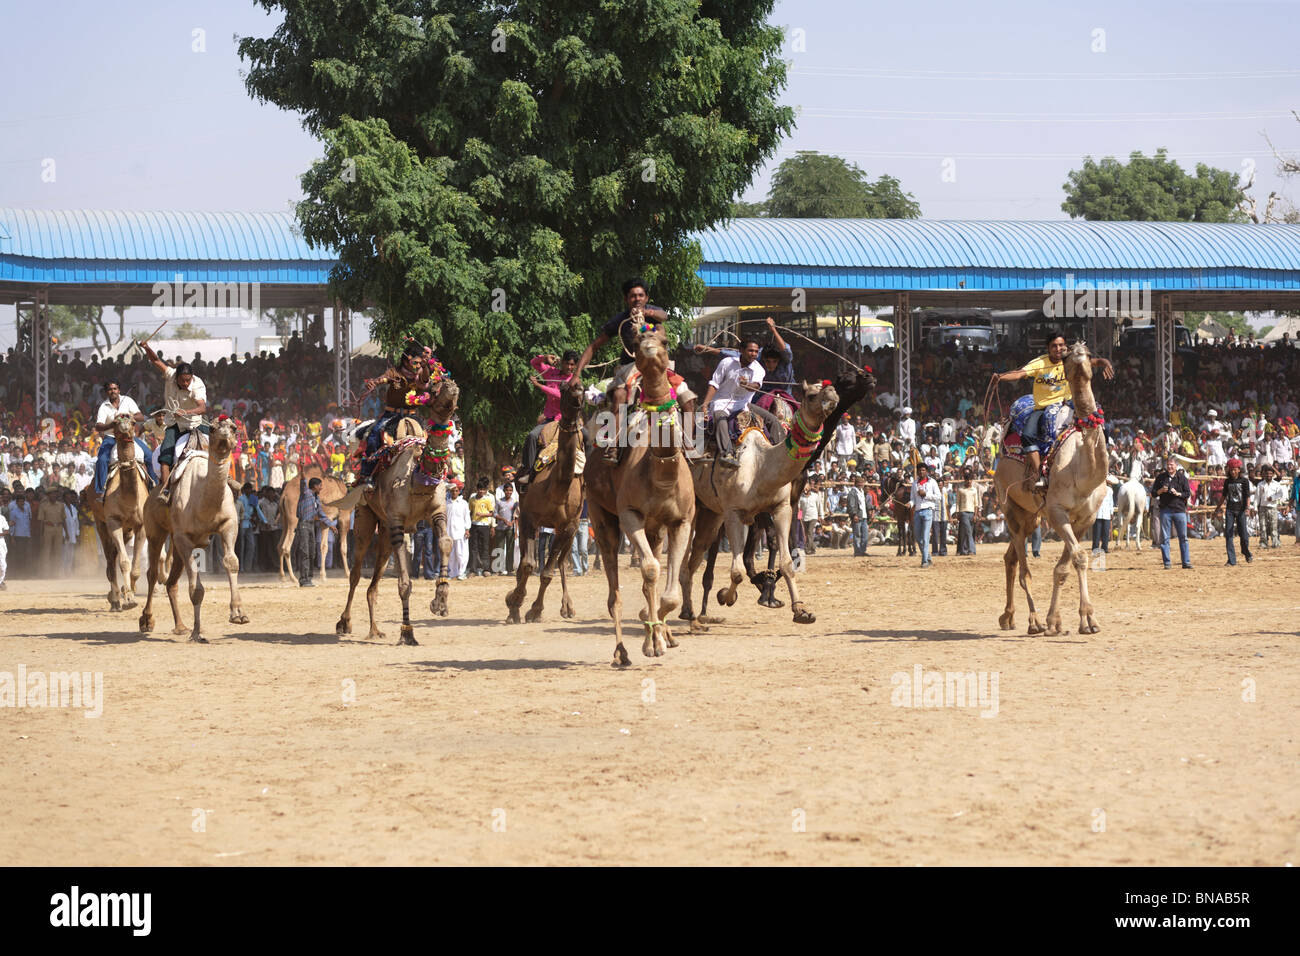 Los jinetes de camellos corriendo una carrera en el festival de Pushkar que es la más antigua tradición de eventos deportivos en Rajastán Foto de stock